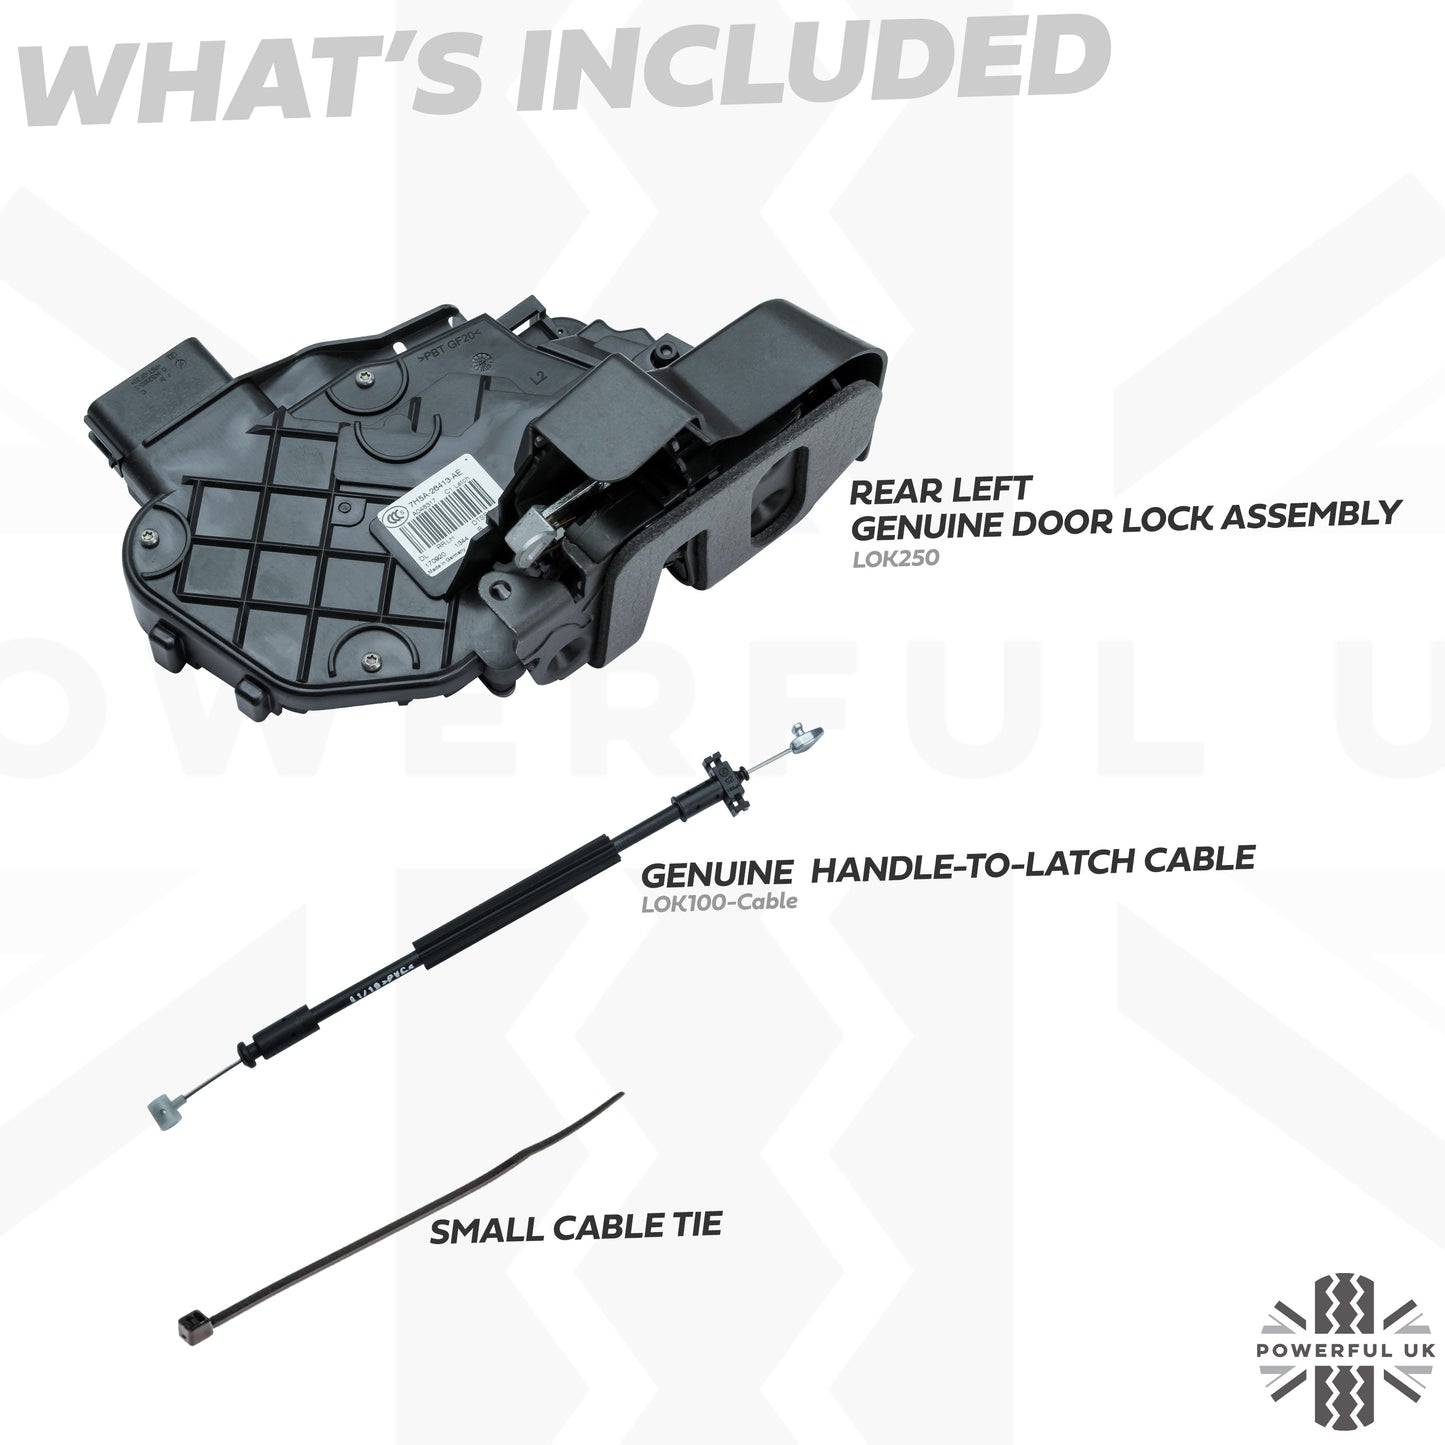 Central Locking Repair Kit for Rear LH door lock on Land Rover Freelander 2